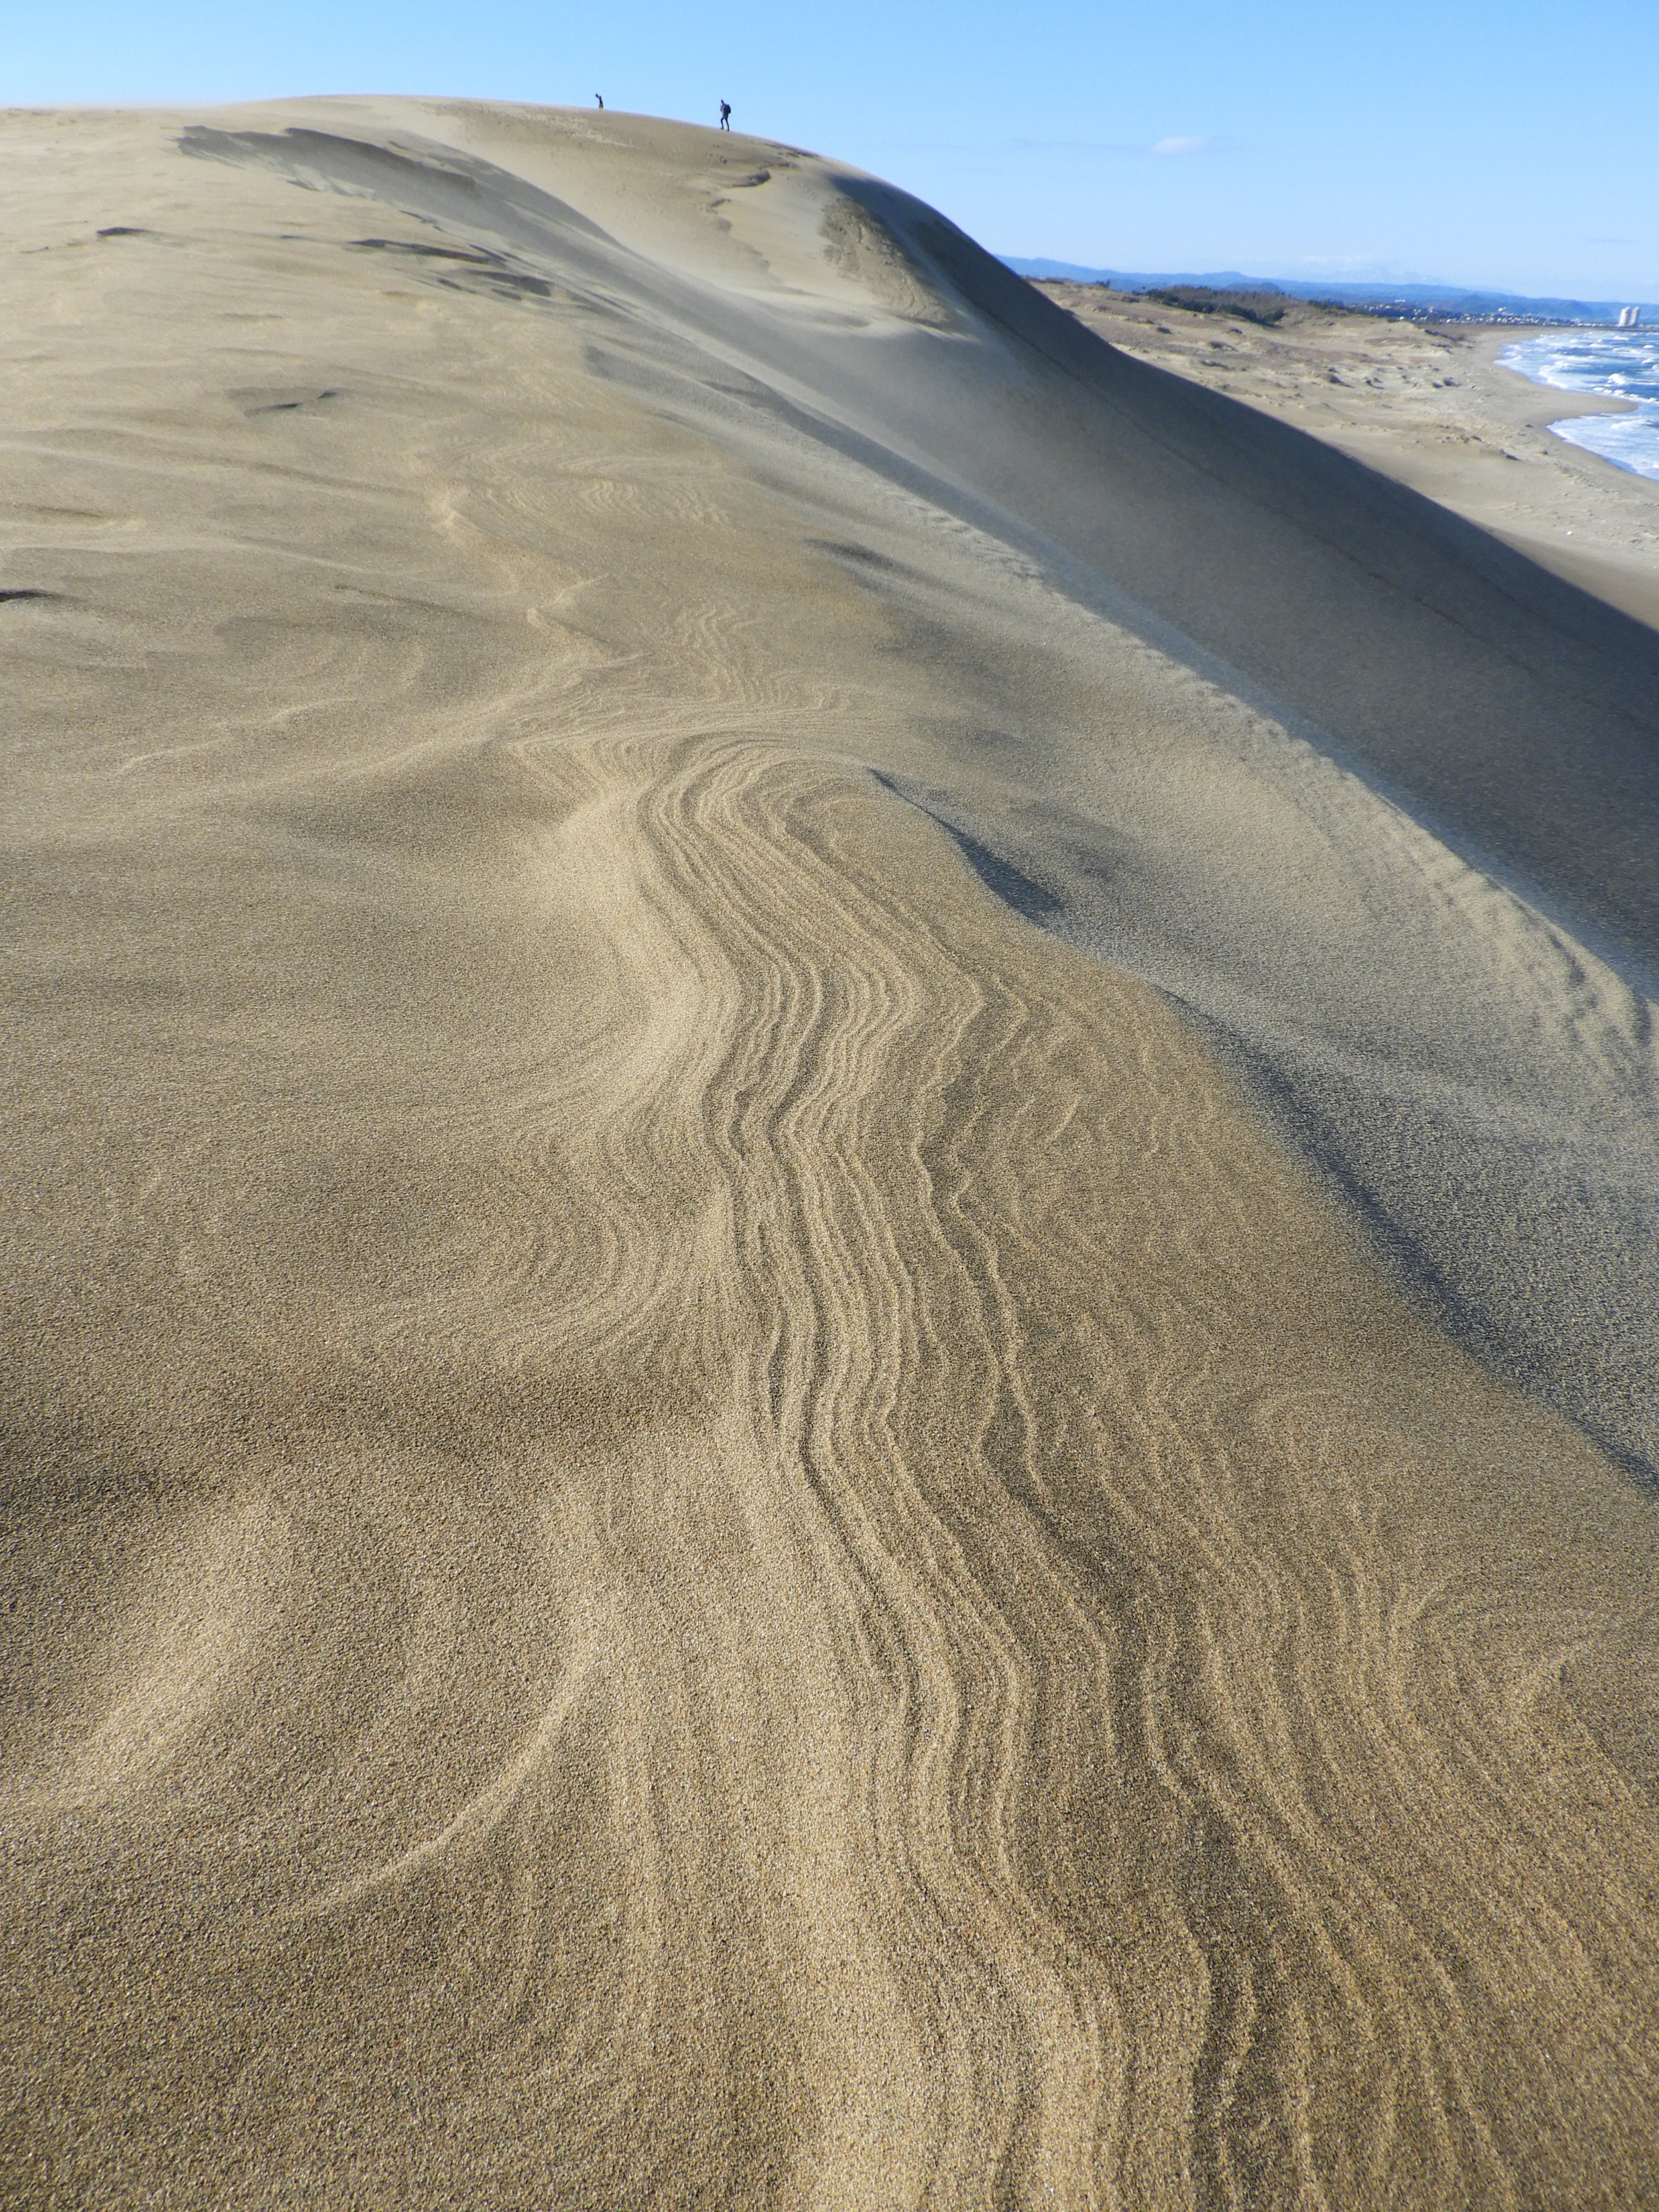 鳥取砂丘ビジターセンター 今日の鳥取砂丘 その 風が作る砂の模様の数々が楽しめます キレイな風紋 ゴツゴツの砂柱 さちゅう そして馬の背の斜面では砂簾 されん 飛砂で砂が削れた部分では ラミナ 訪れた方はゆっくり散策を楽しんでくださいね